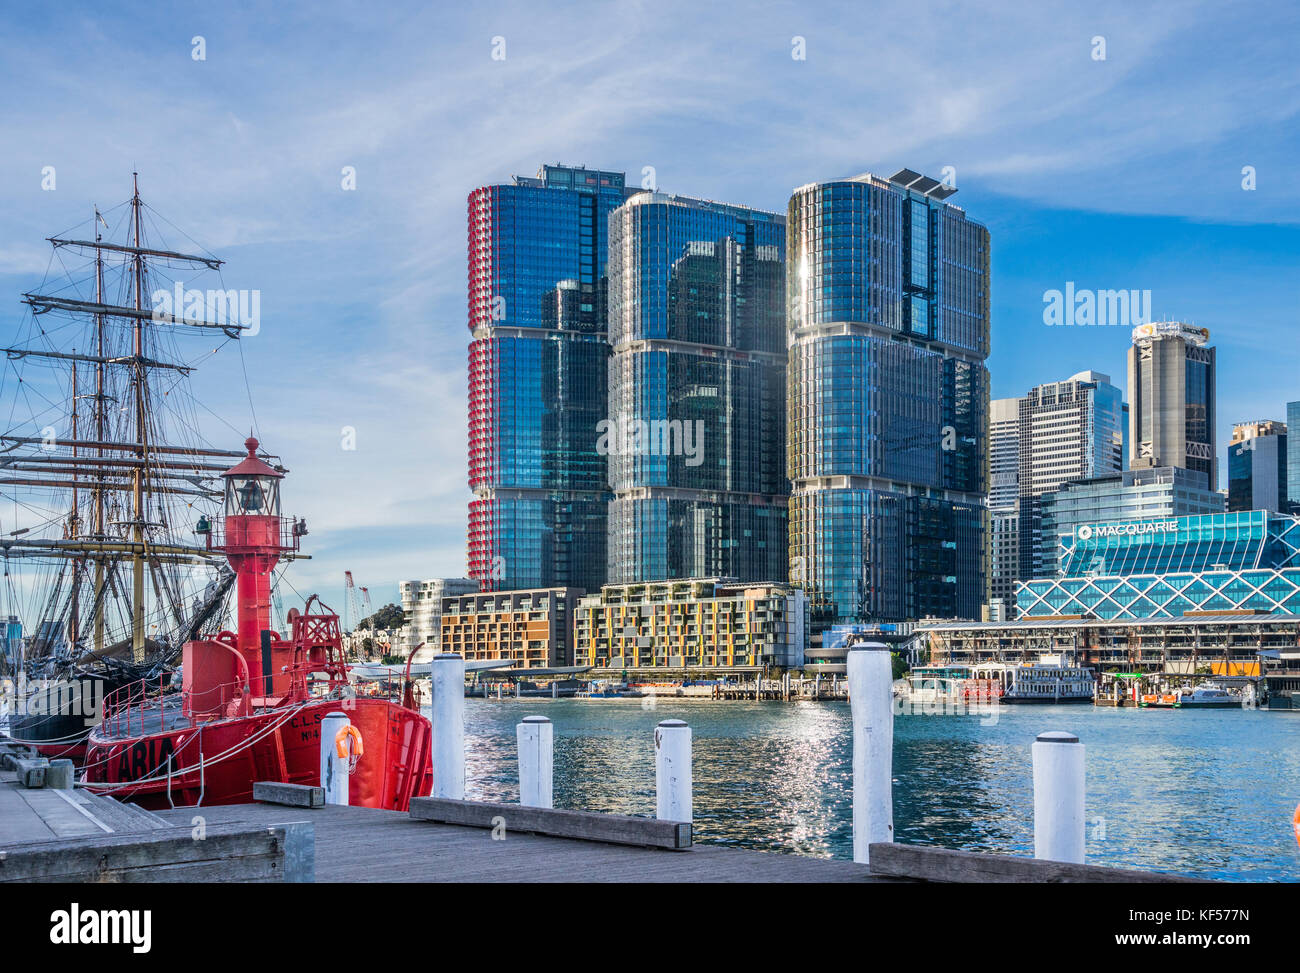 Australien, New South Wales, Sydney, Darling Harbour, Ansicht der Barangaroo International Towers Wolkenkratzer aus der Wharf 7 Maritime Heritage Centre Stockfoto